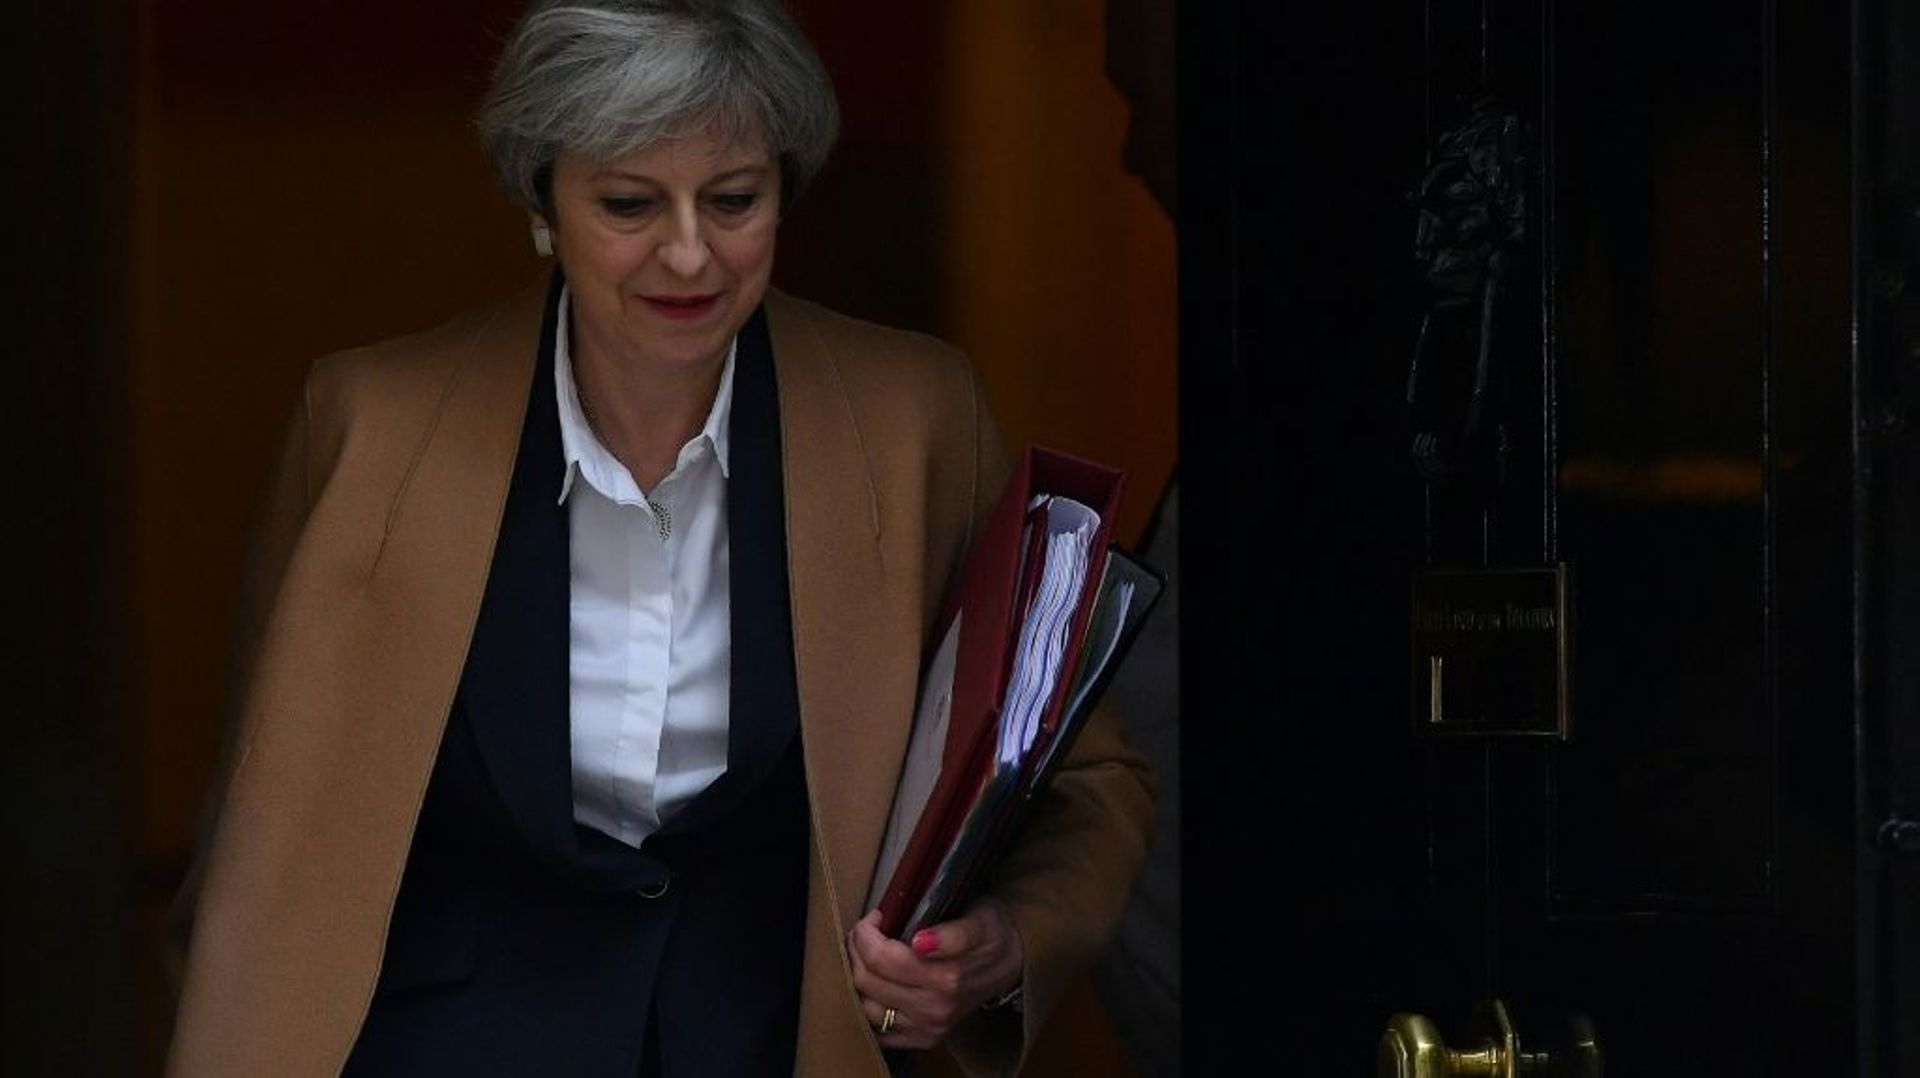 La Première ministre britannique Theresa May, au 10 Downing Street, le 29 mars 2017 à Londres